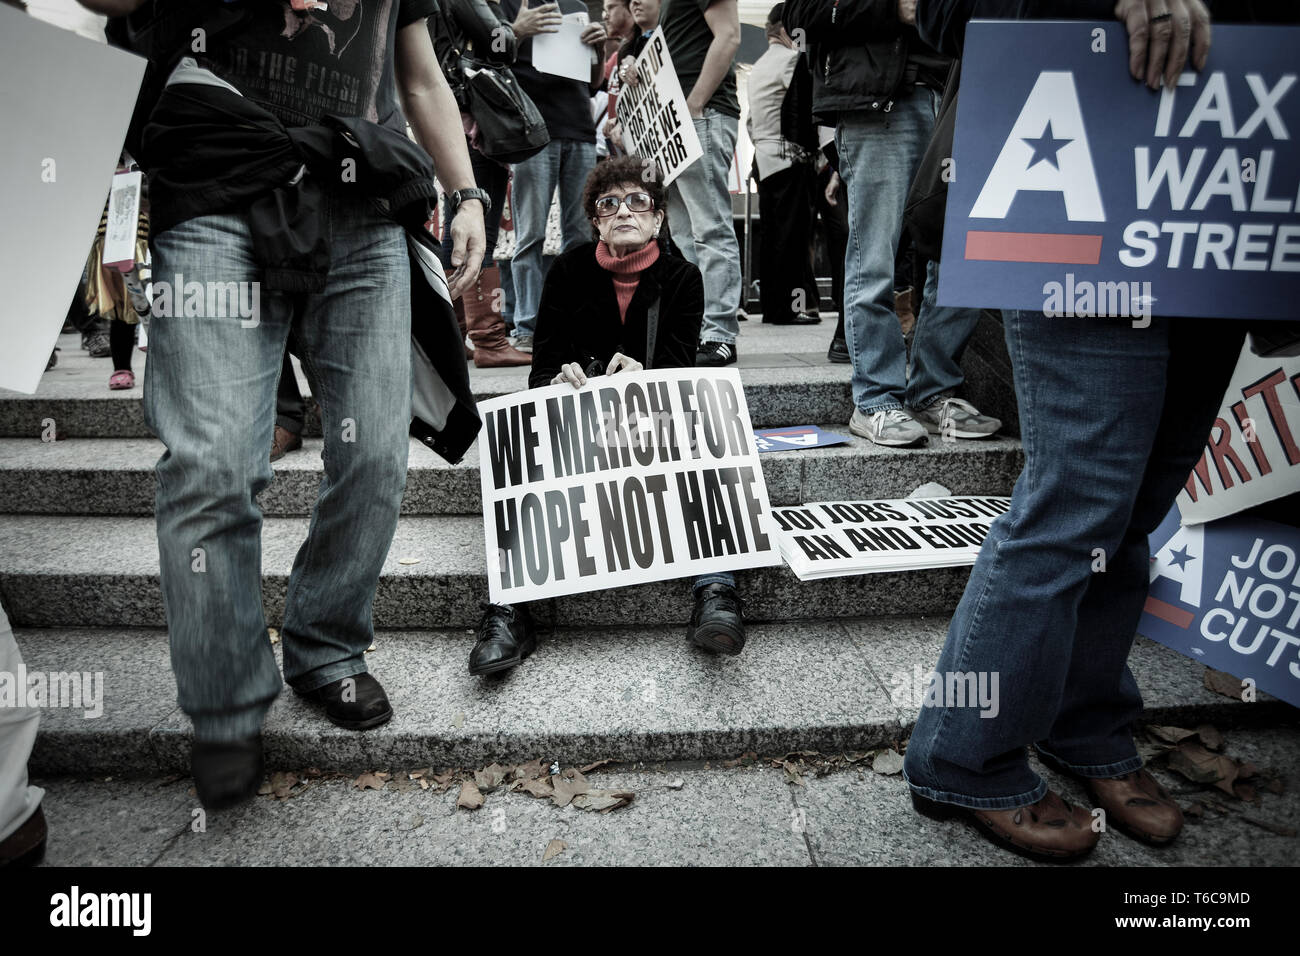 Eine Demonstrantin, die Demonstration von Besetzt die Wall Street orchestriert. Ihr Sternzeichen liest "Wir marschieren für Hoffnung nicht hassen". Die Besetzt die Wall Street demonstrierten gegen finanzieller Gier und Ungleichheit und die Frage der Ethik der Finanzwirtschaft. Stockfoto